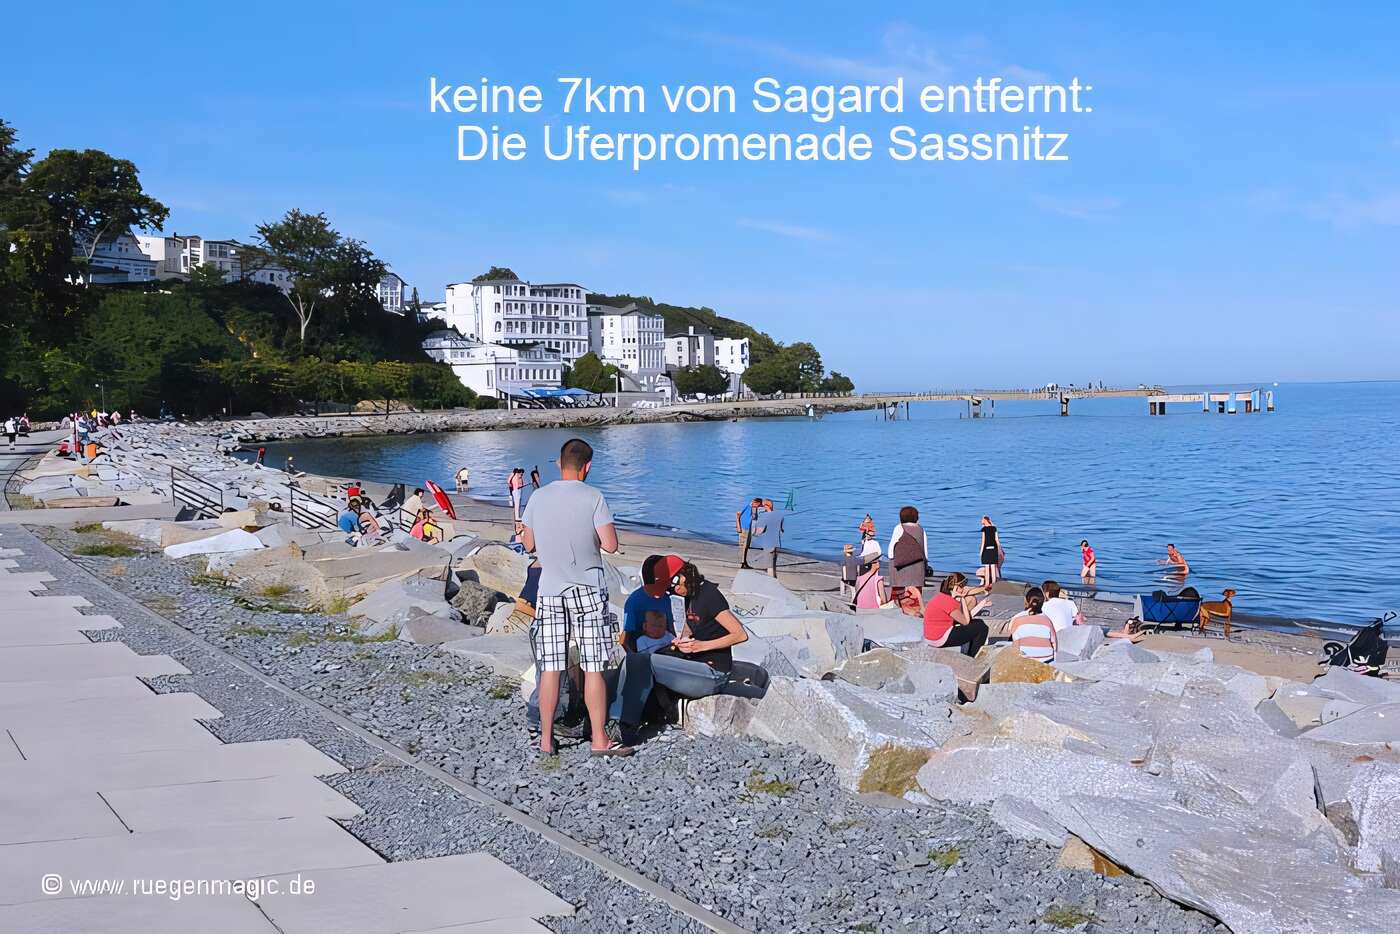 Keine 7km entfernt: die Uferpromenade in Sassnitz